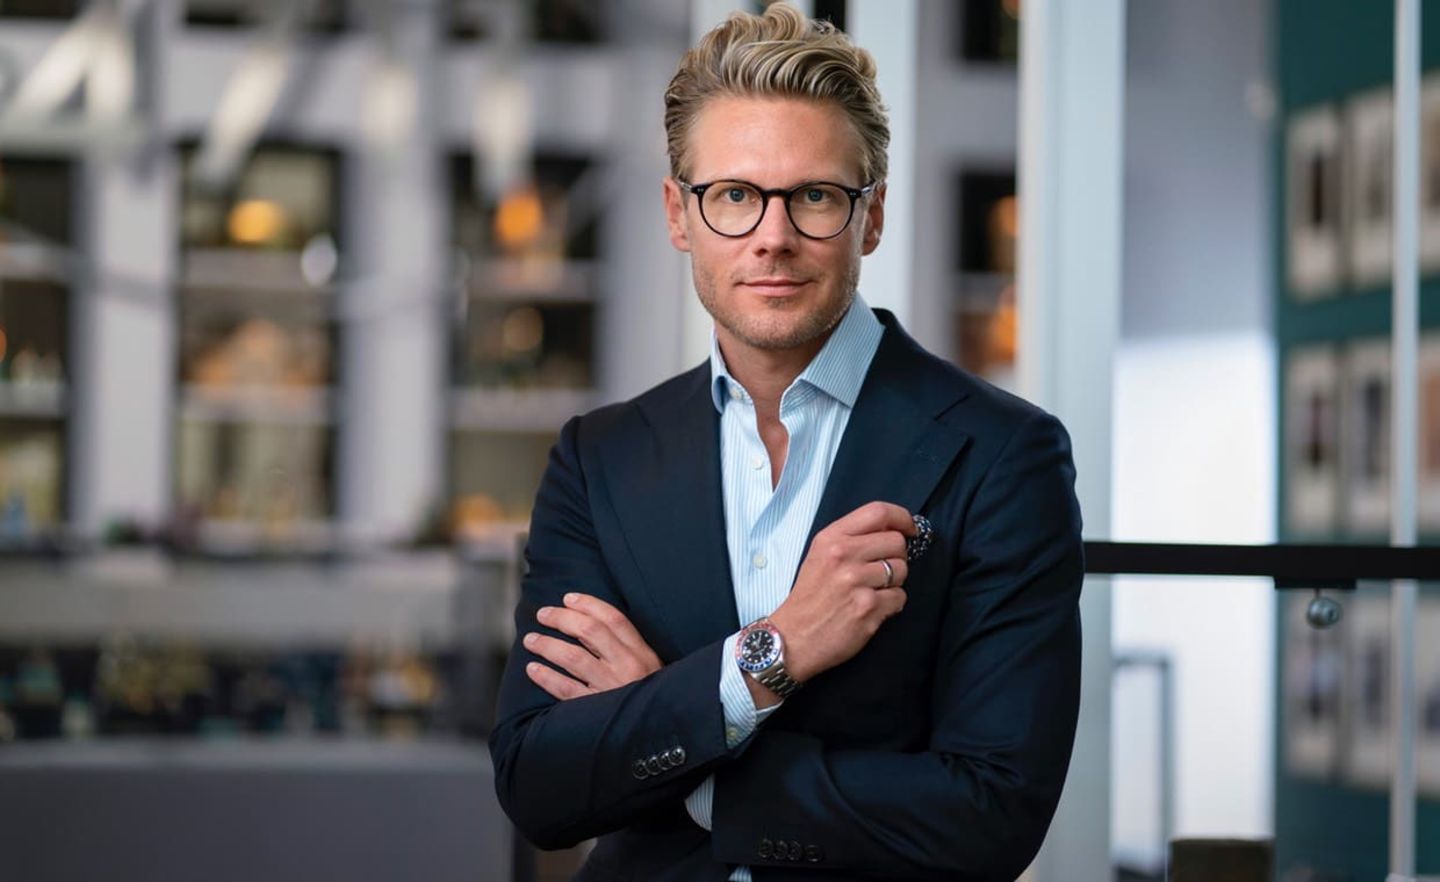 Seit 2020 ist Stephan Kemen CEO des BEauty-Unternehmens Mäurer & Wirtz aus Stollberg.